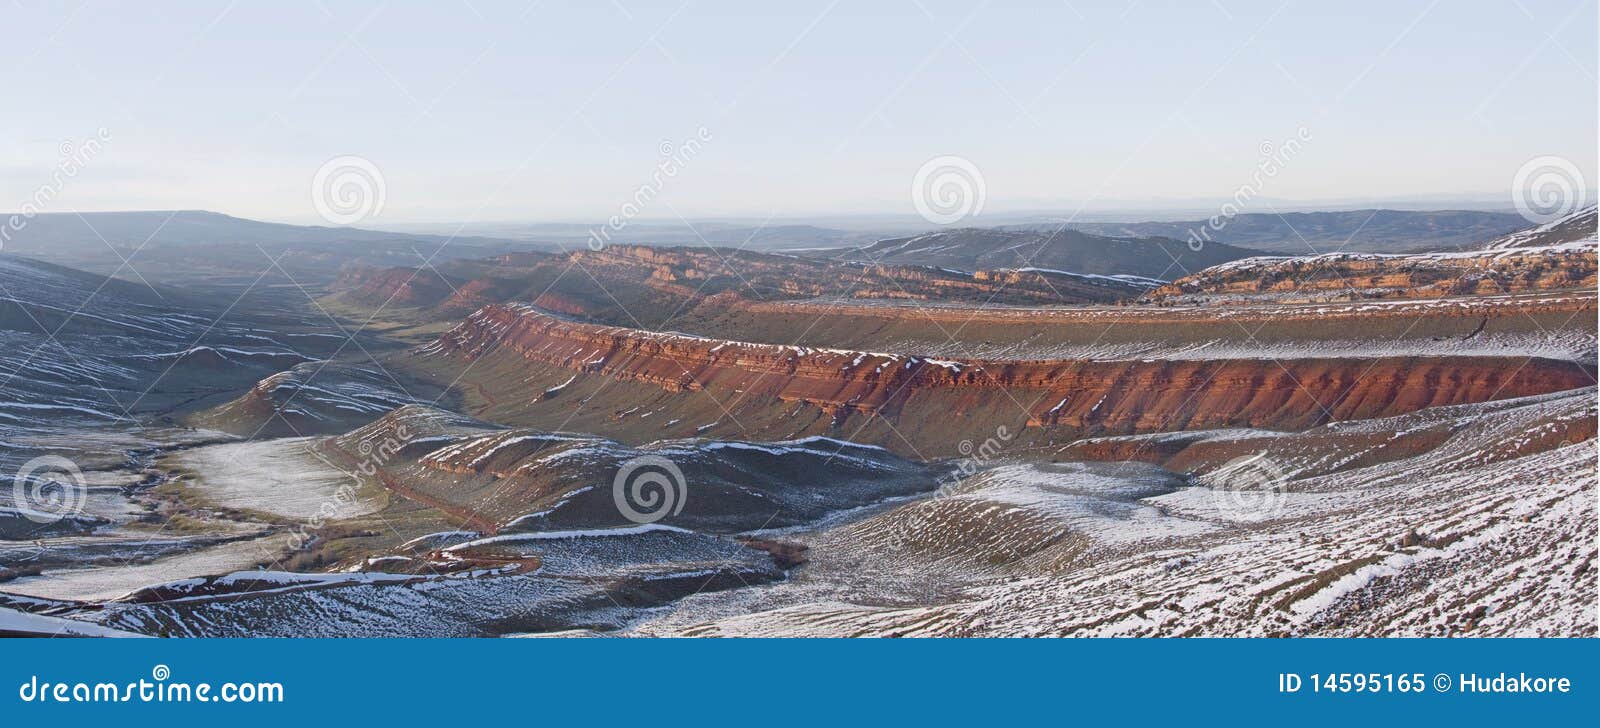 red canyon, wyoming panorama